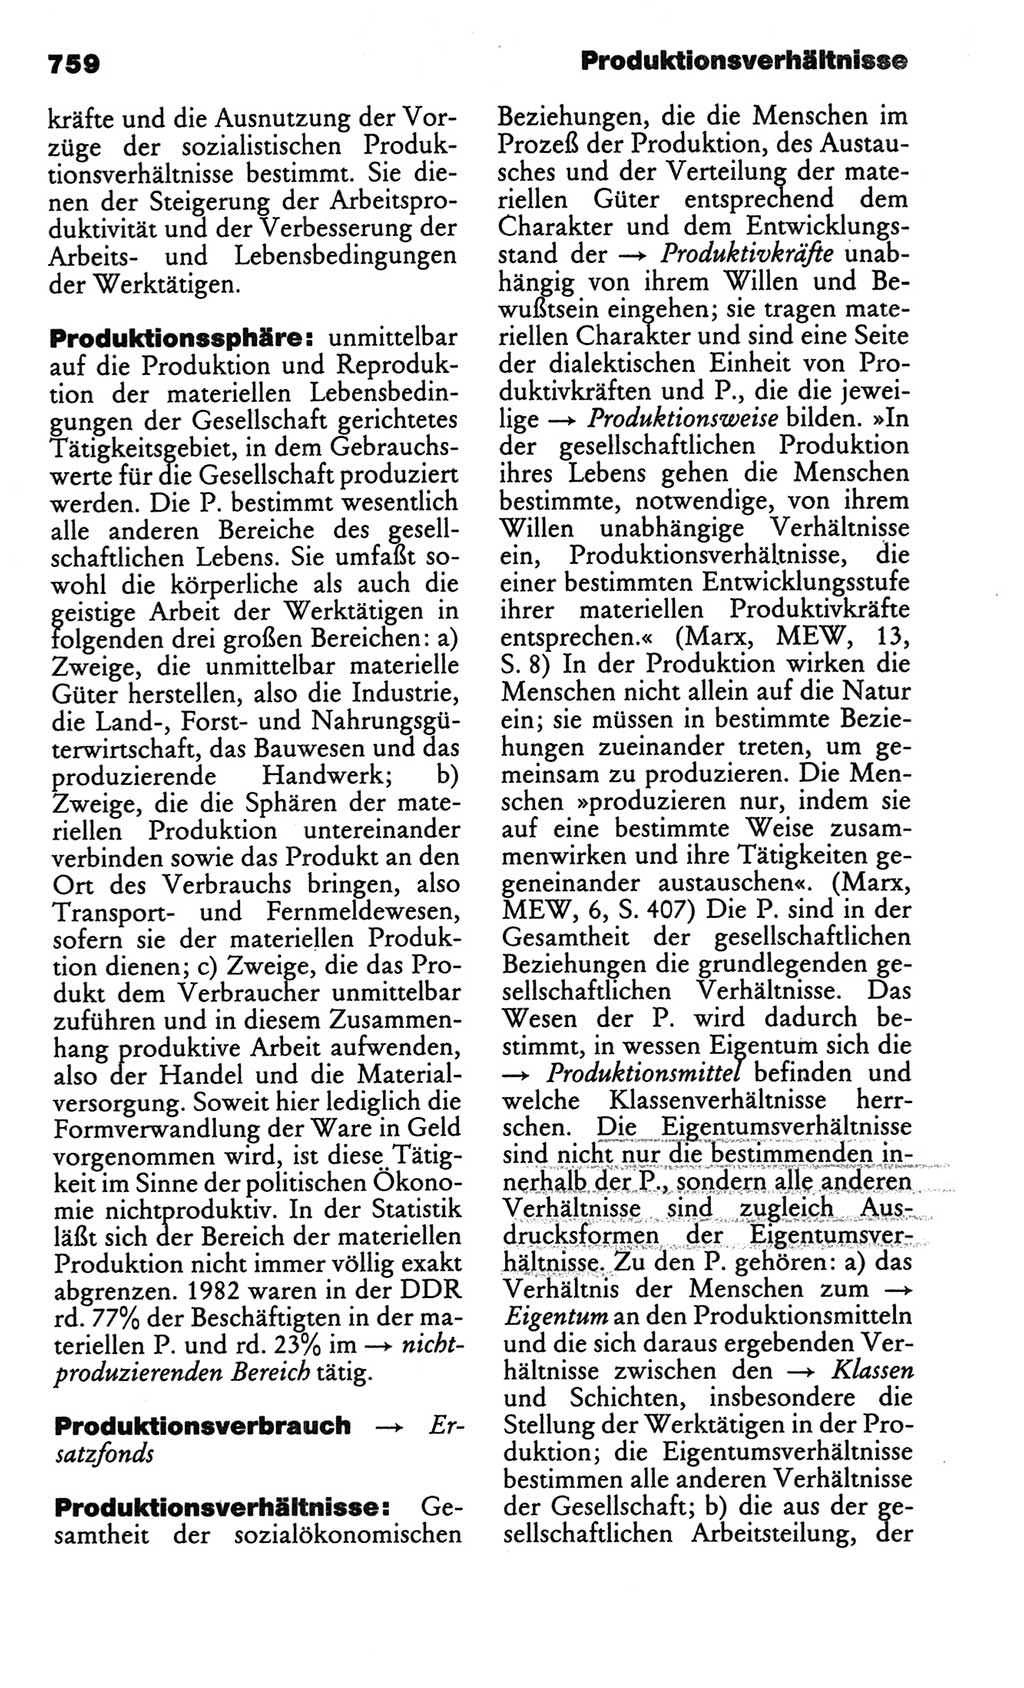 Kleines politisches Wörterbuch [Deutsche Demokratische Republik (DDR)] 1986, Seite 759 (Kl. pol. Wb. DDR 1986, S. 759)